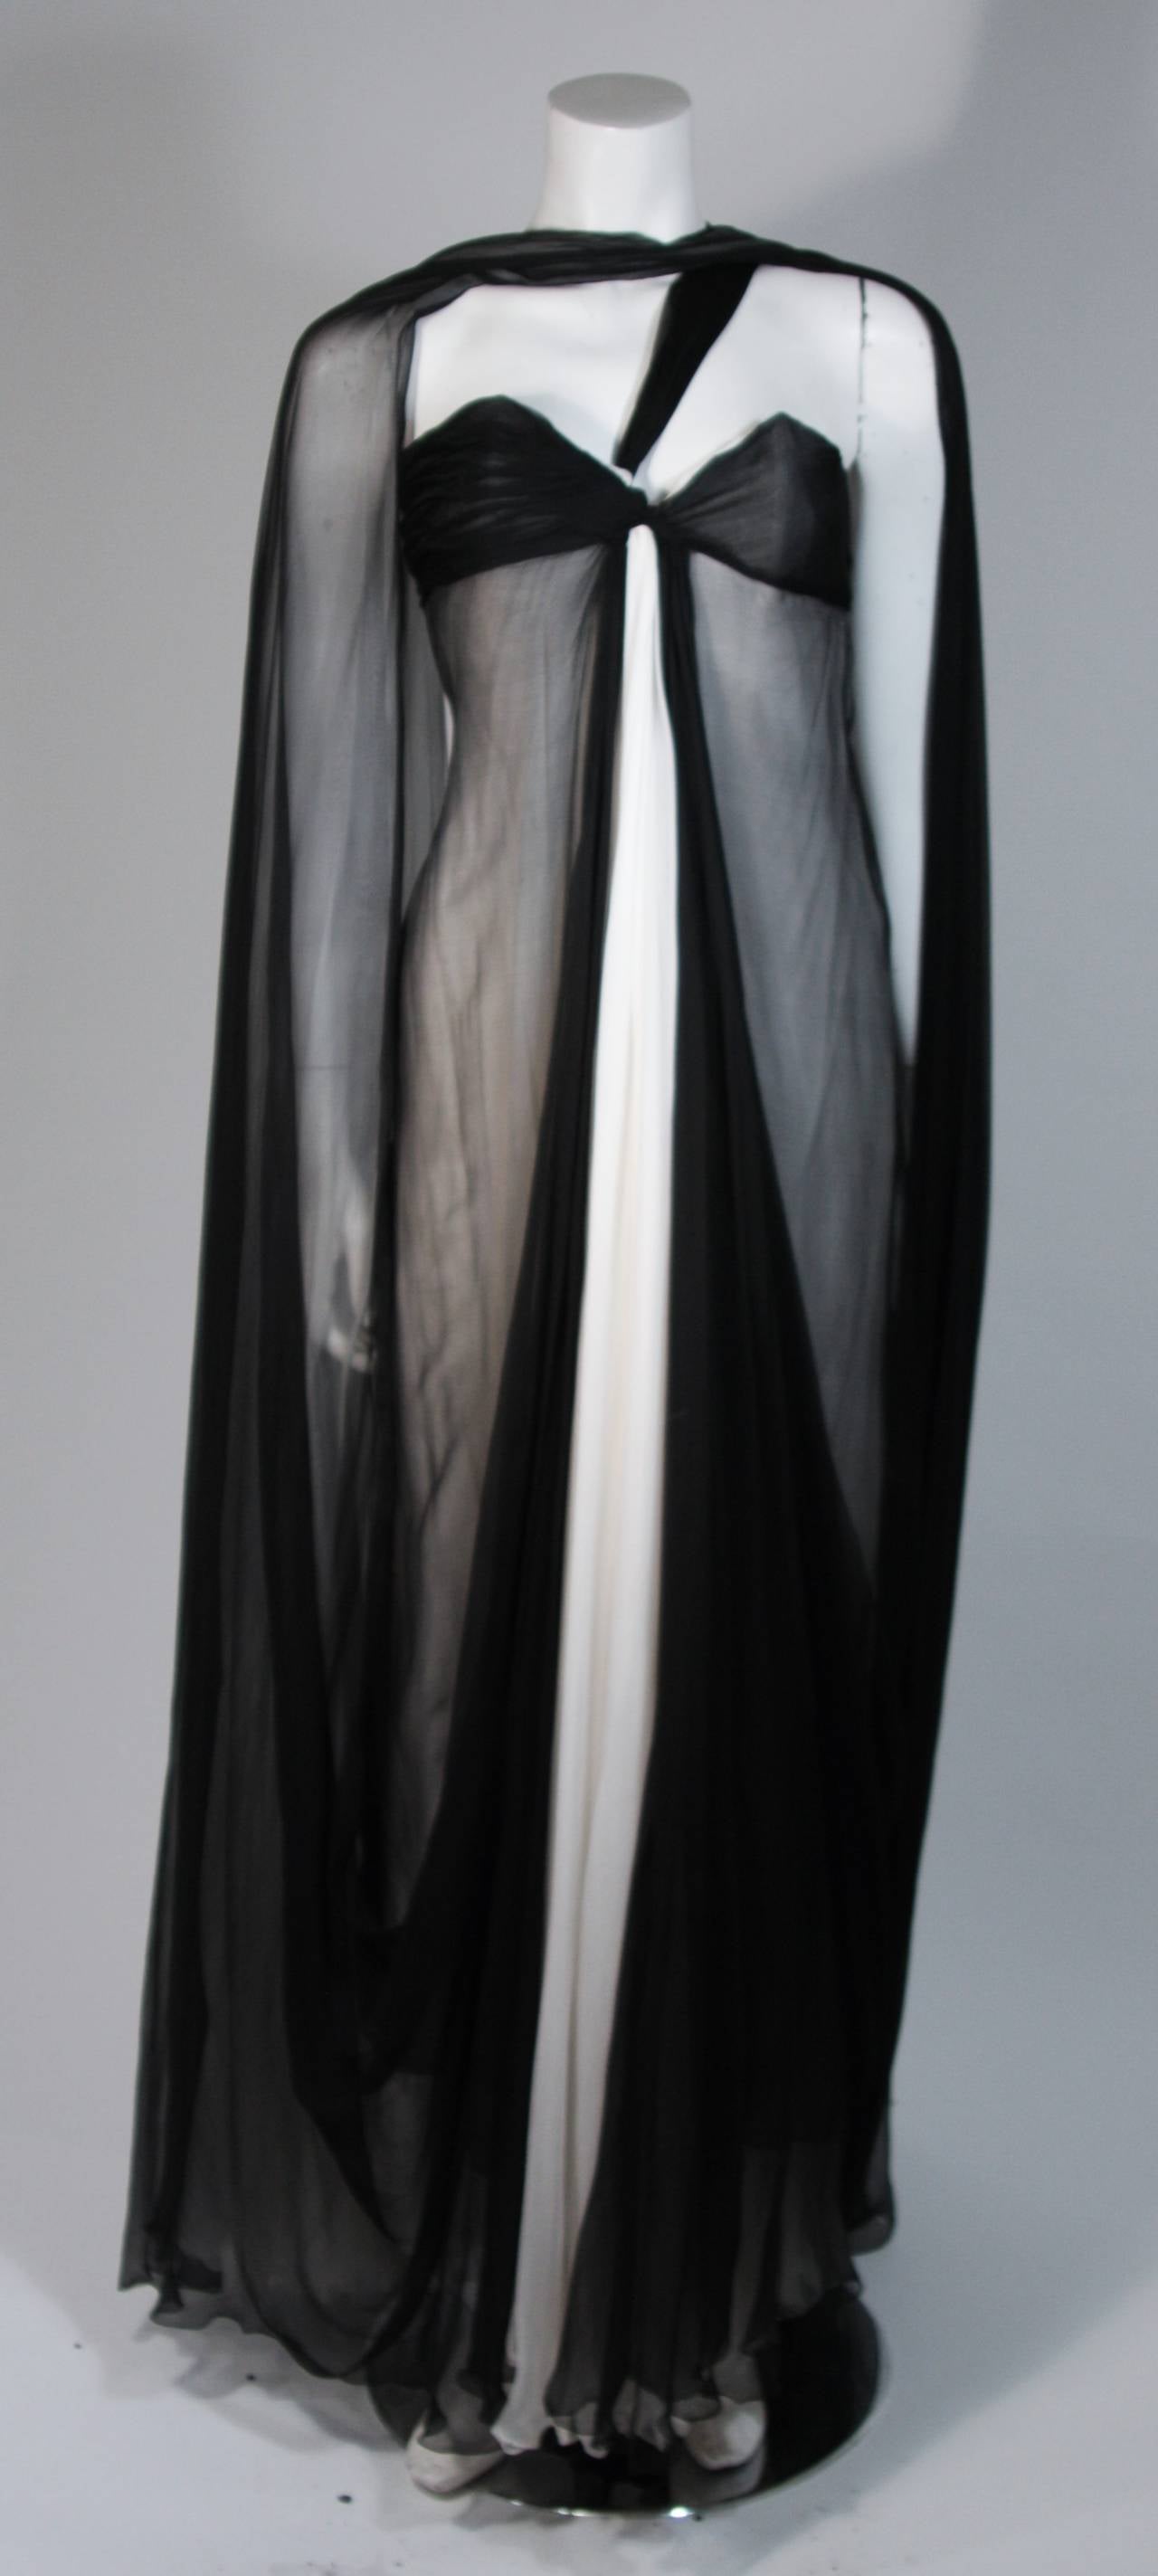 Cette robe Jacqueline De Ribes est composée de mousseline de soie noire et ivoire. La robe présente un drapé qui peut être stylisé et porté à votre guise (voir les variations sur les photographies). Elle est dotée d'une fermeture à glissière au